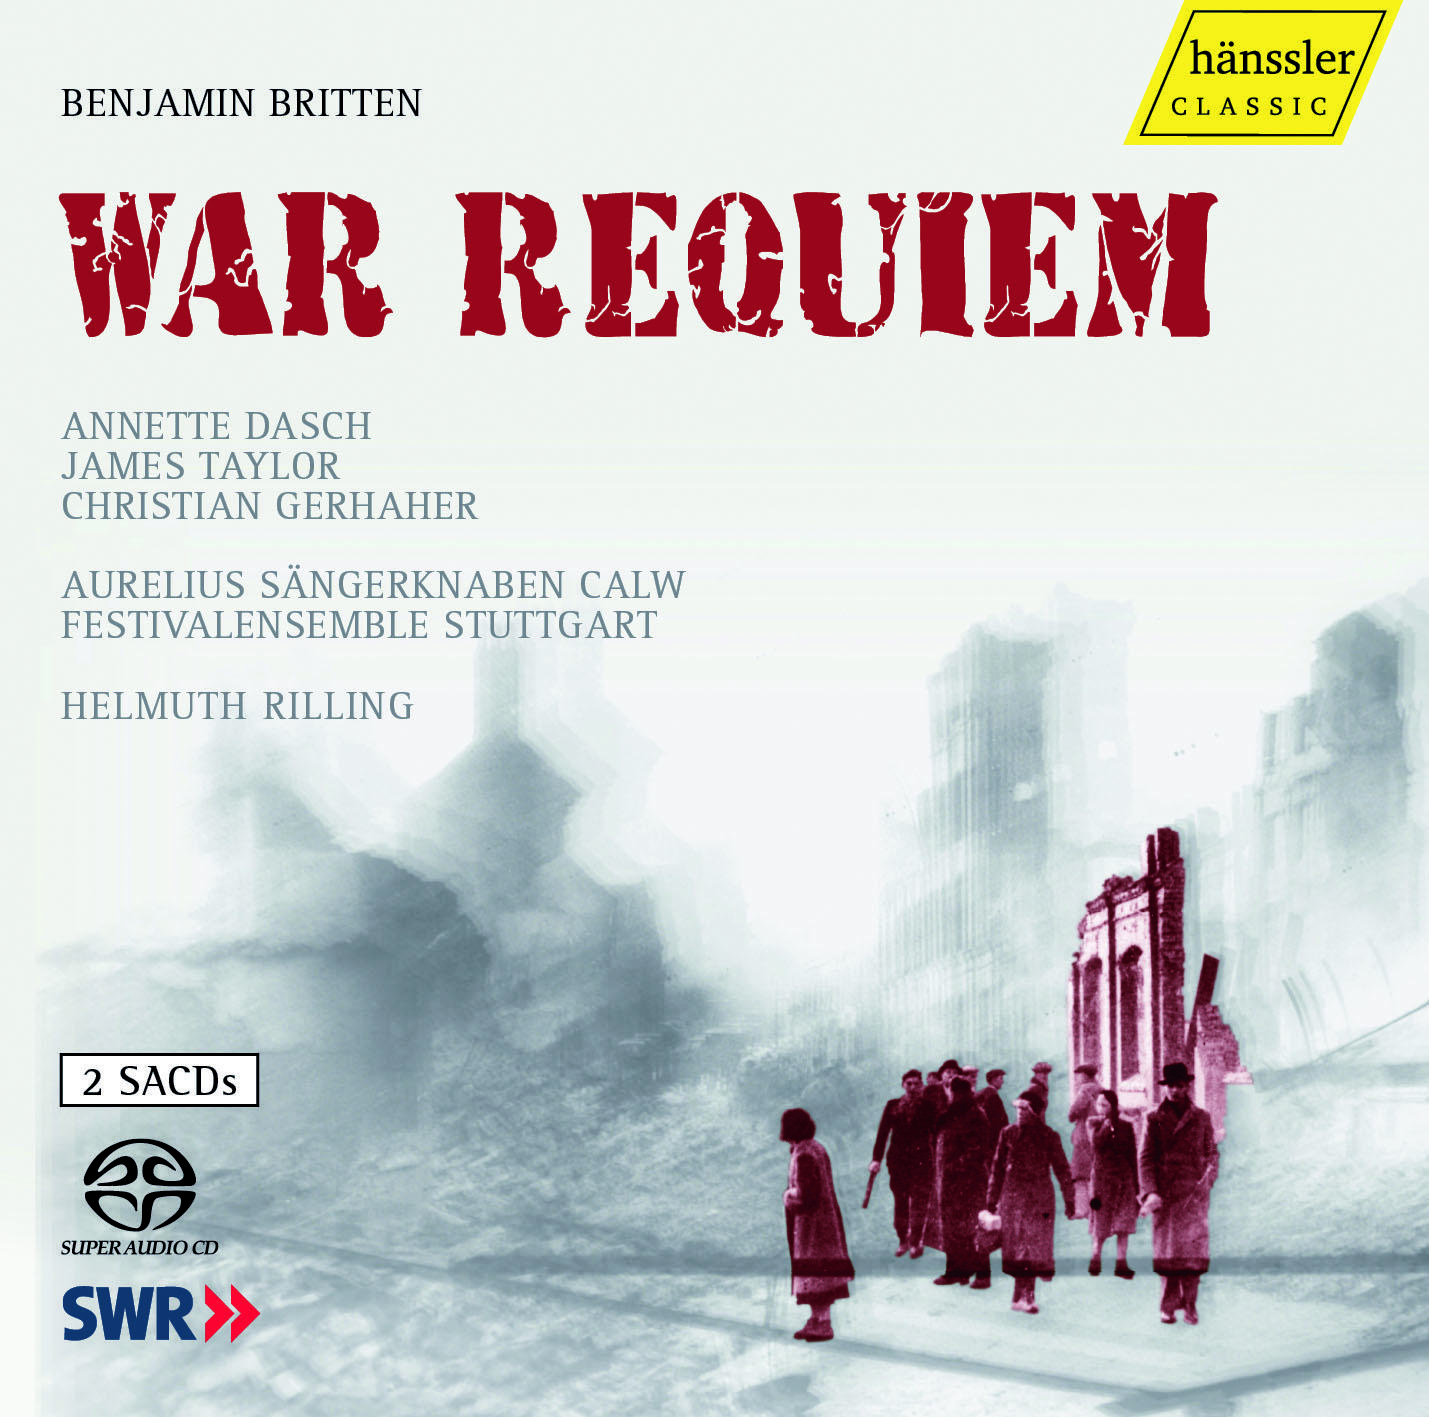 War Requiem, Op. 66: Requiem aeternam